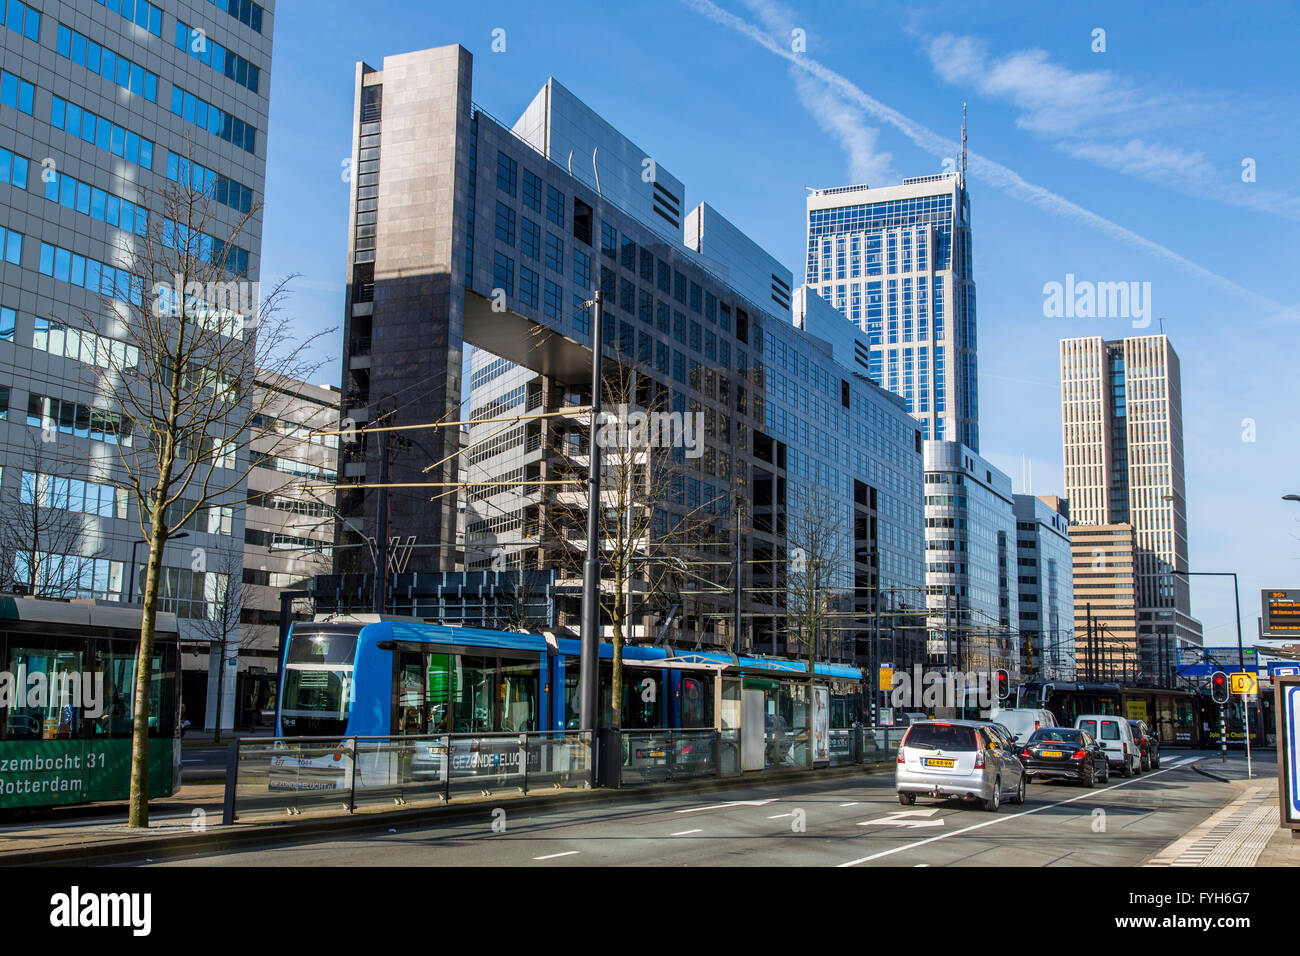 Innenstadt, Skyline von Rotterdam, das Bürogebäude an der Weena Street,  Niederlande Stockfotografie - Alamy